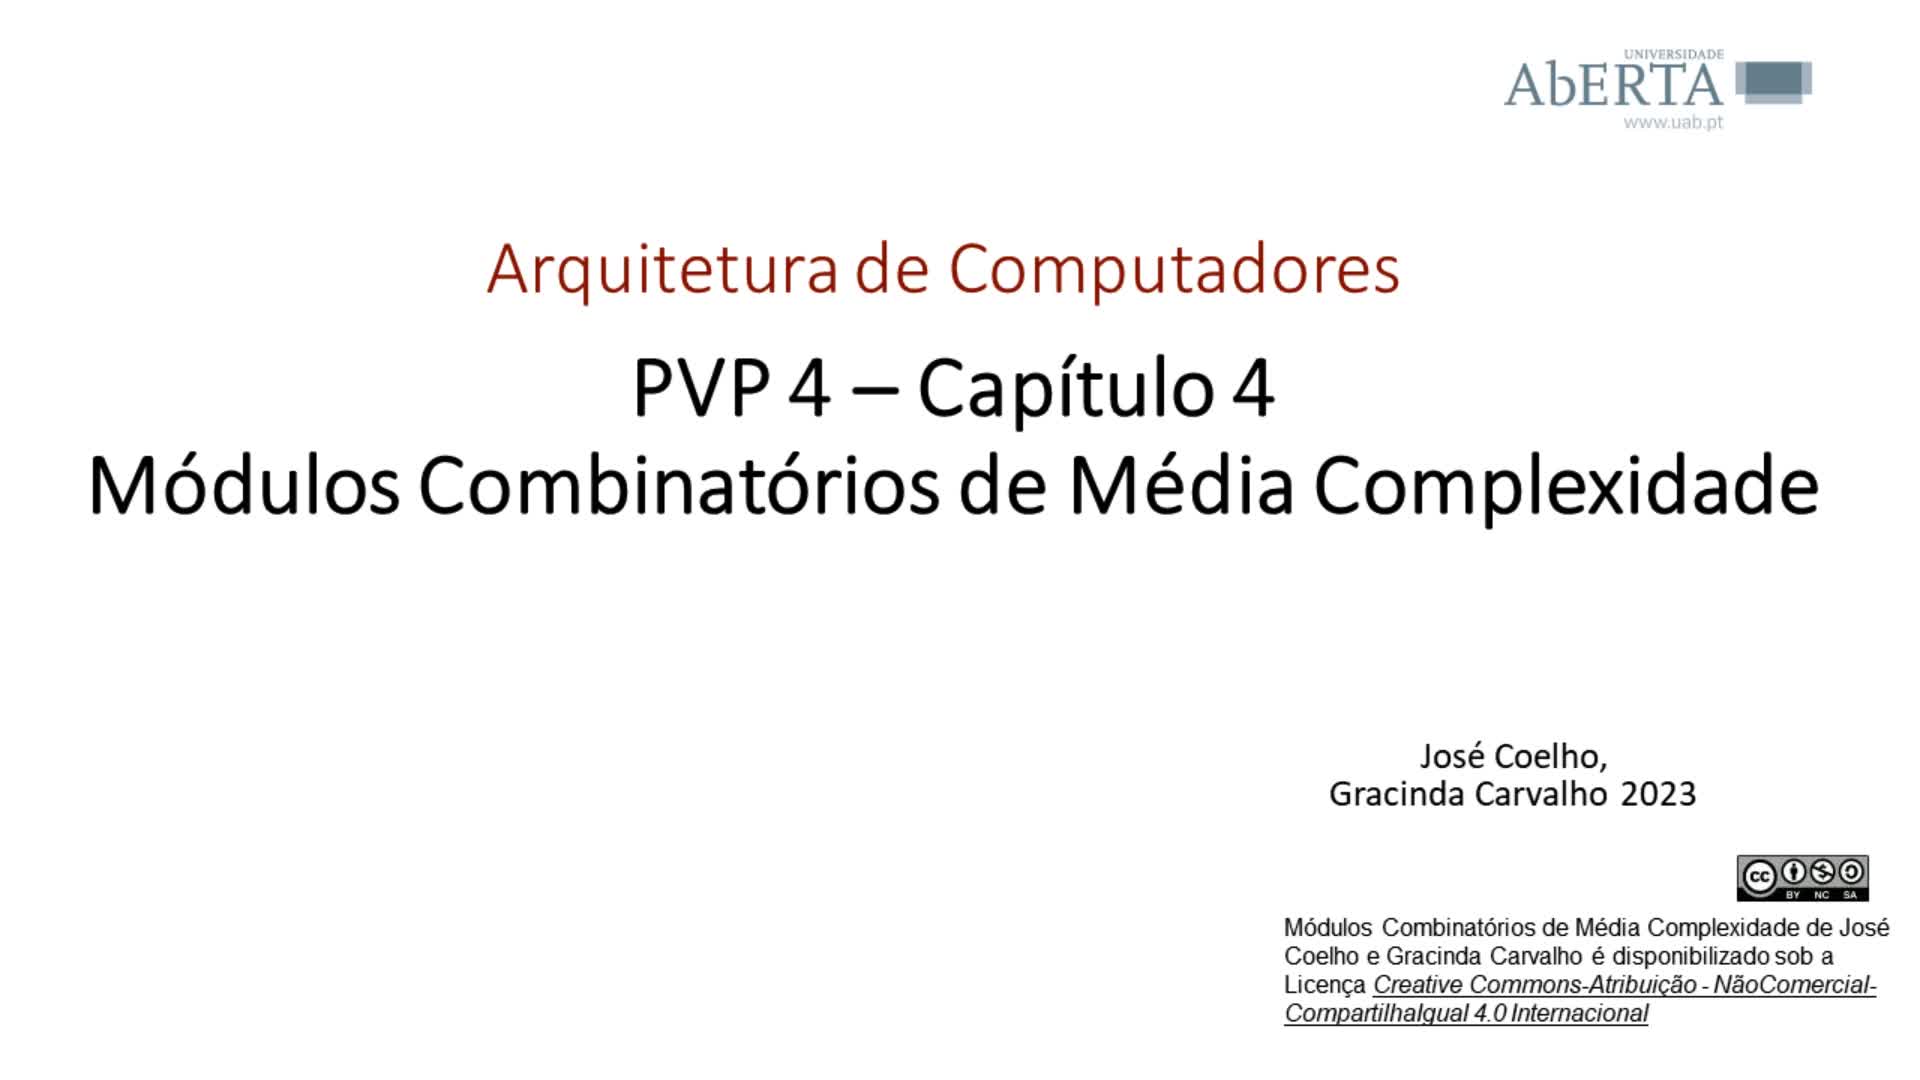  Arquitetura de Computadores. Capítulo 4 - Módulos combinatórios de média complexidade